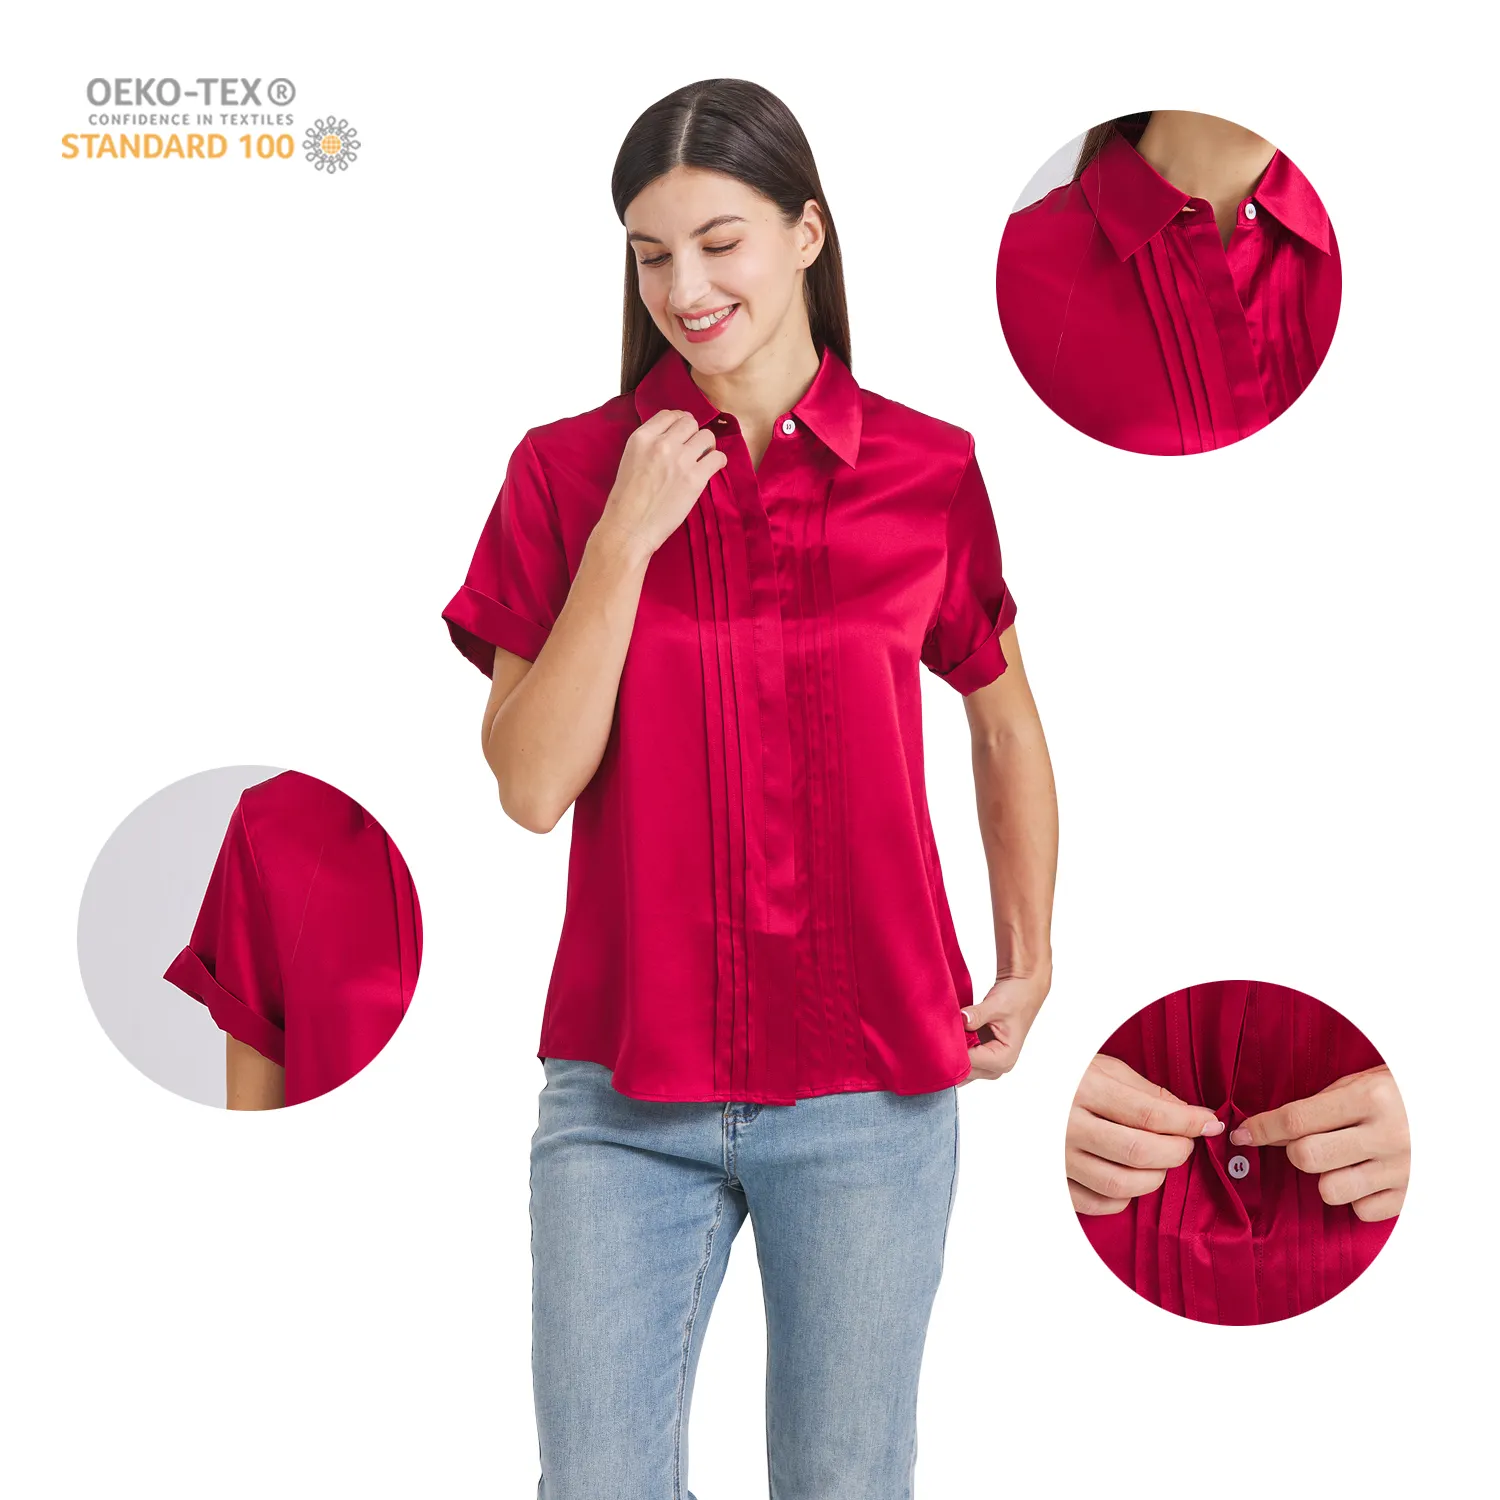 LOGO personalizzato di alta qualità 100% abbigliamento di seta di gelso camicie realizzate in fabbrica alla perfezione